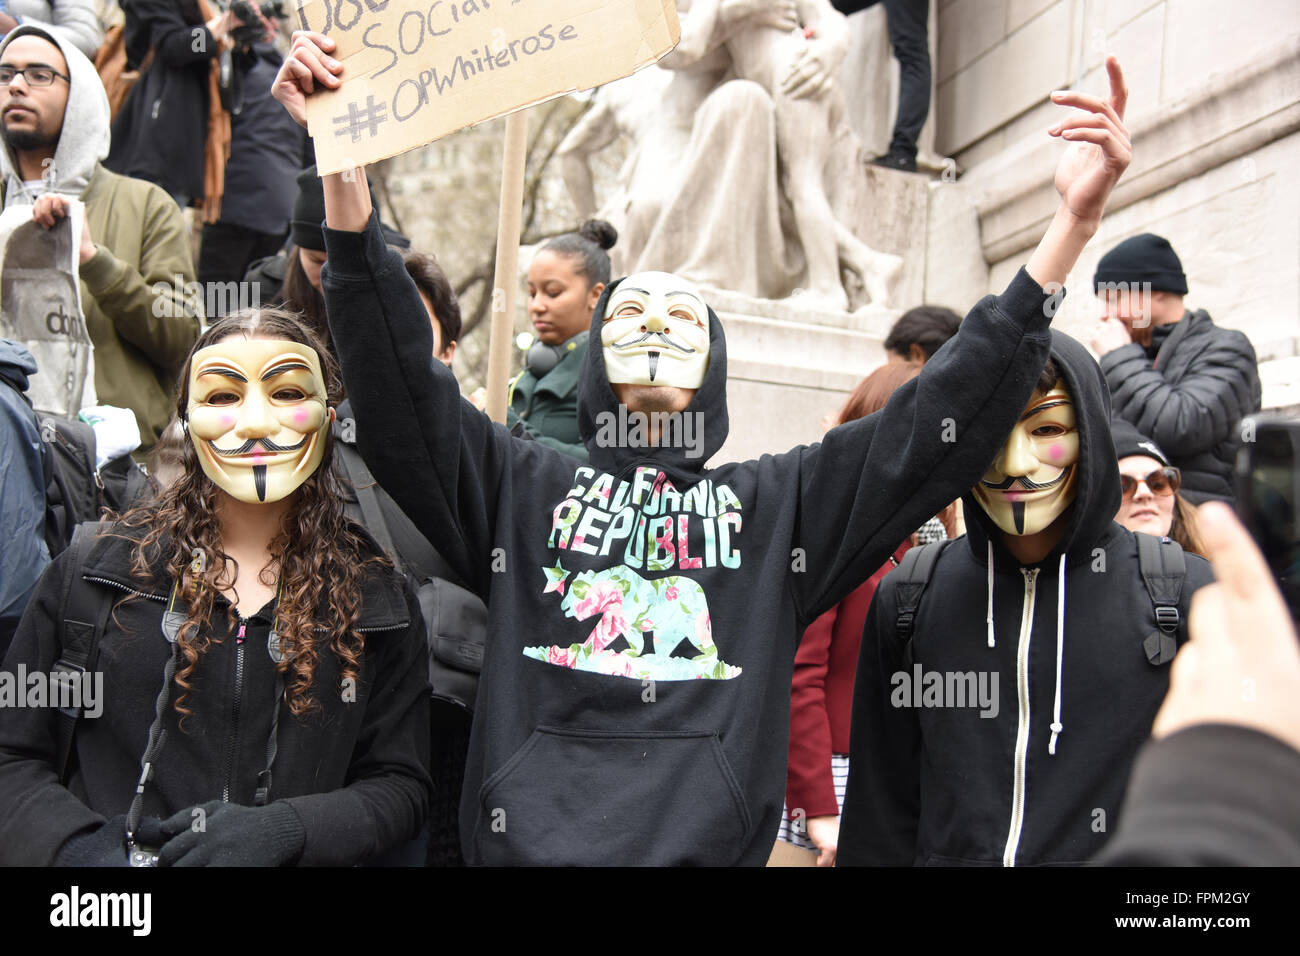 New York, États-Unis, 19 mars 2016 : les militants dans les masques de Guy Fawkes dans Columbus Circle au cours de NYC rassemblement contre front runner républicain Donald Trump Crédit : Andrew Katz/Alamy Live News Banque D'Images